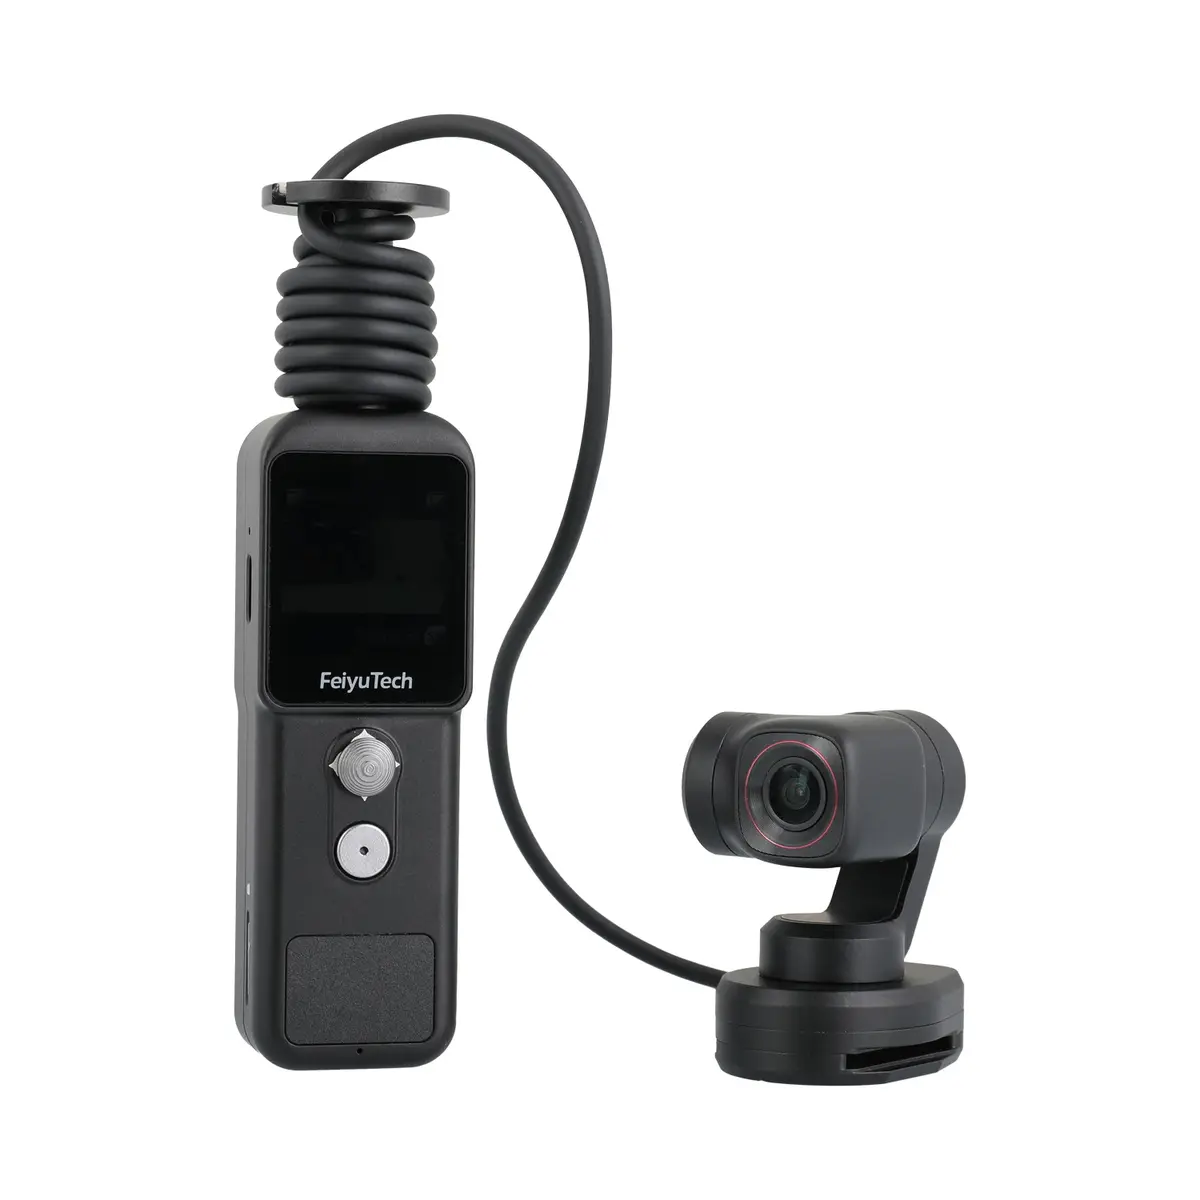 1. Feiyu Pocket 2S Stabilized Handheld Camera